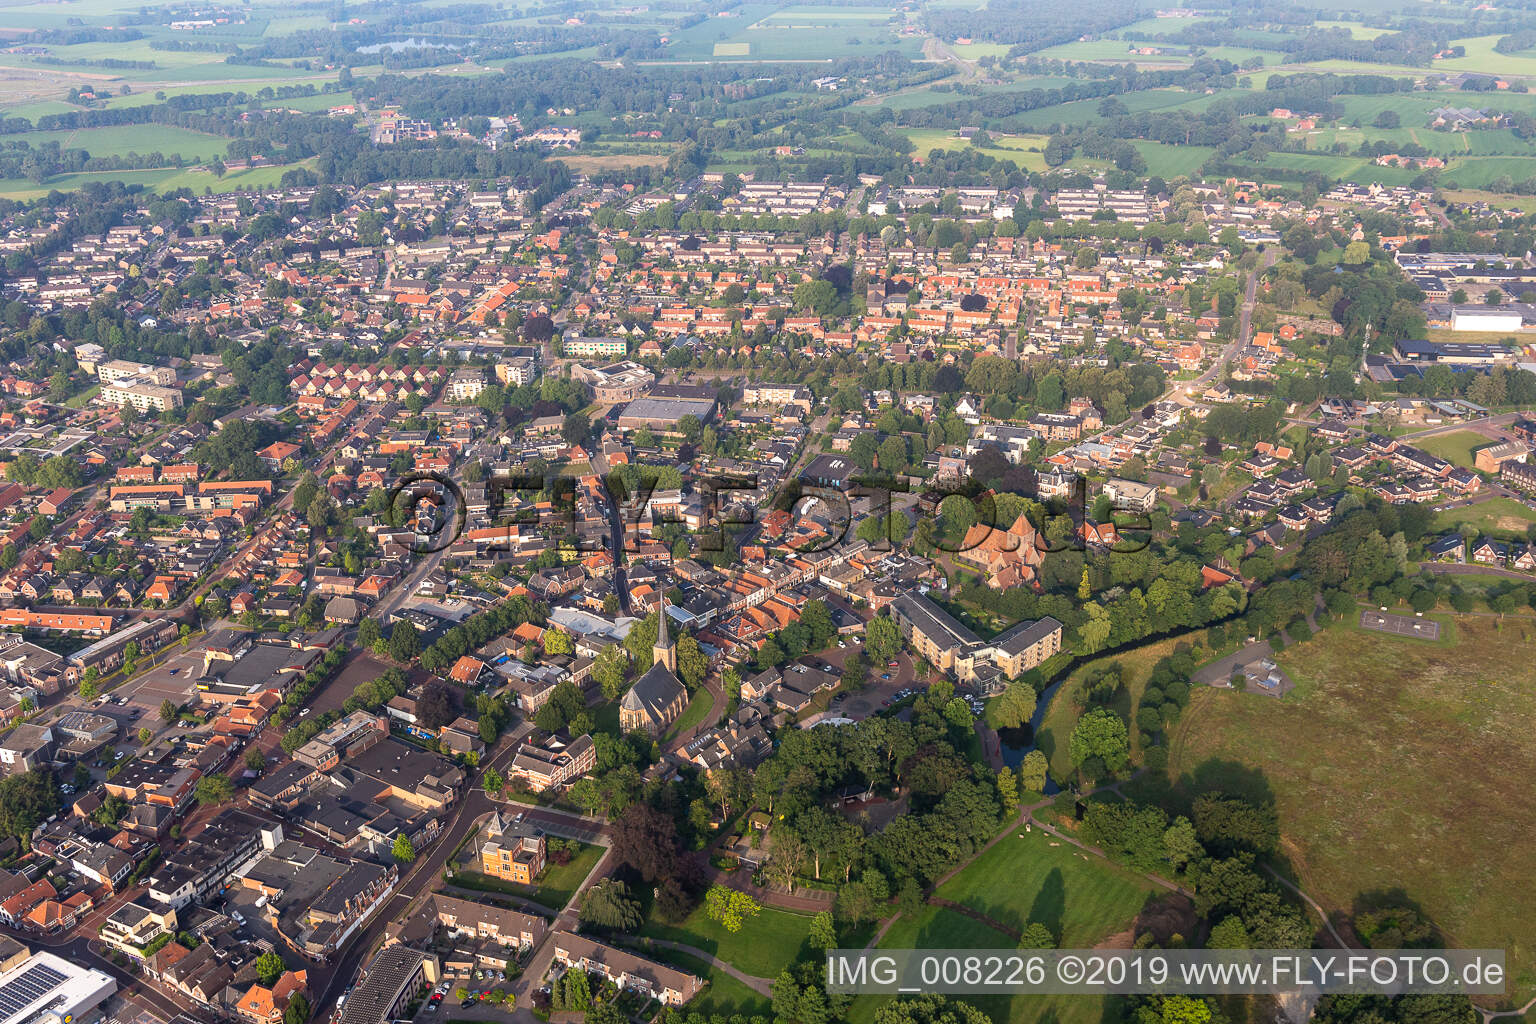 Eibergen in the state Gelderland, Netherlands from above